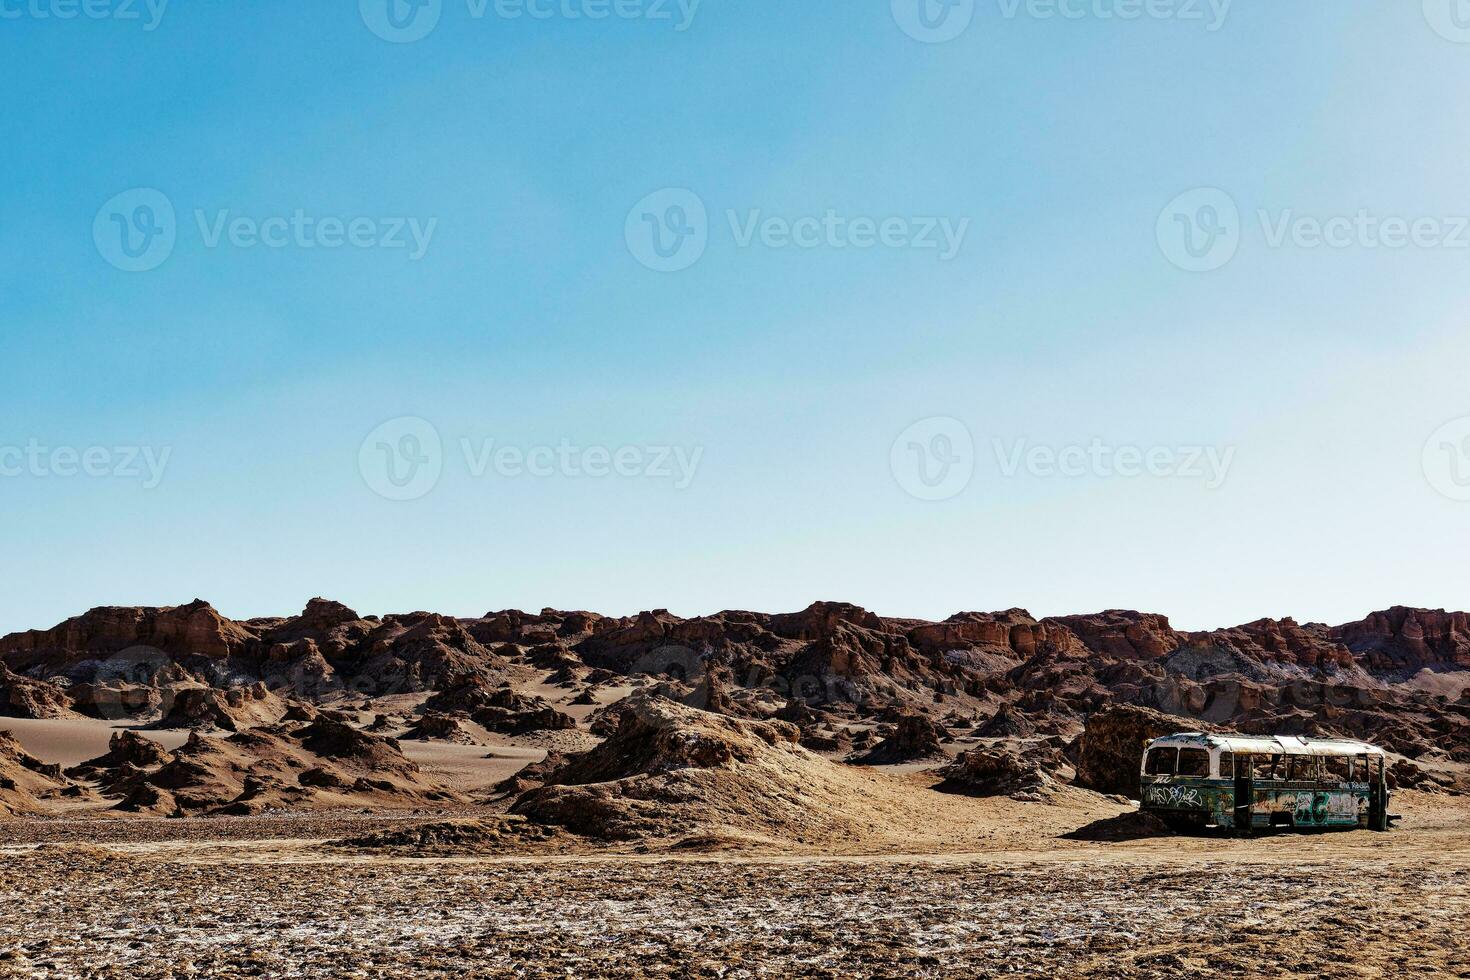 paysages de le atacama désert - san pedro de atacama - el loua - antofagasta Région - Chili. photo